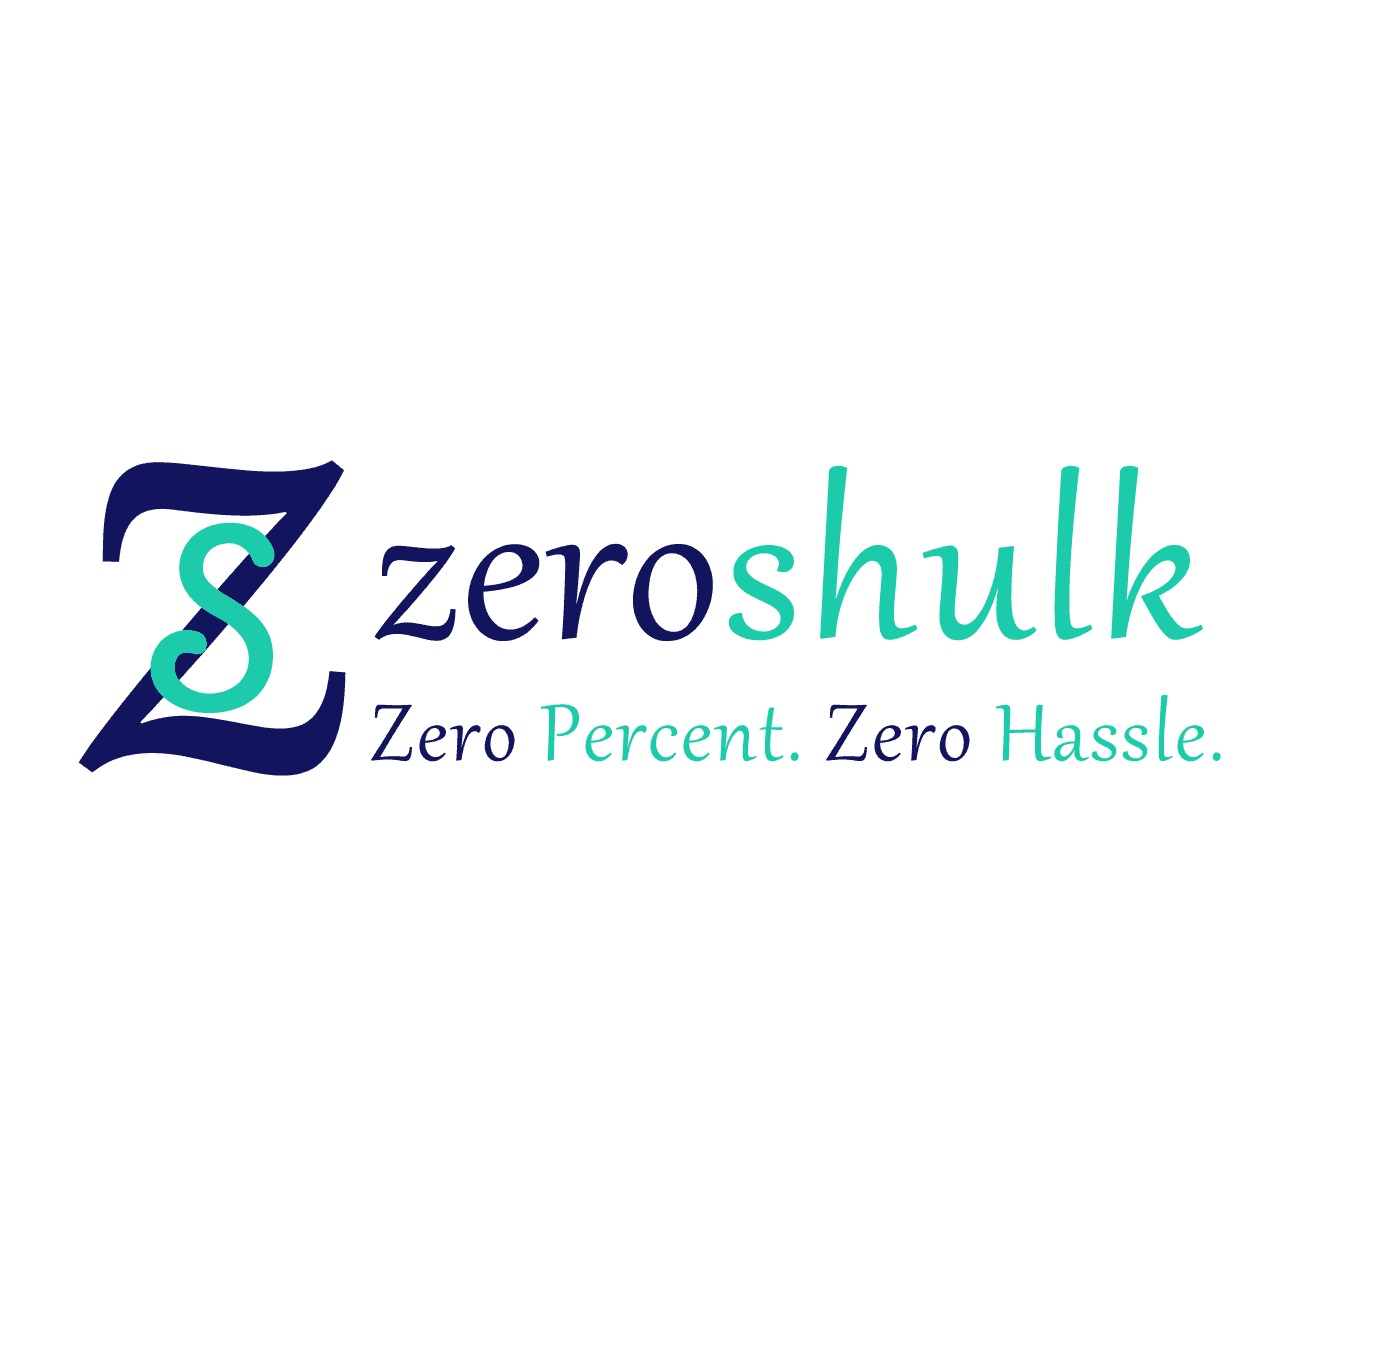 Stock & Share Broker | Zero Shulk Online Trading